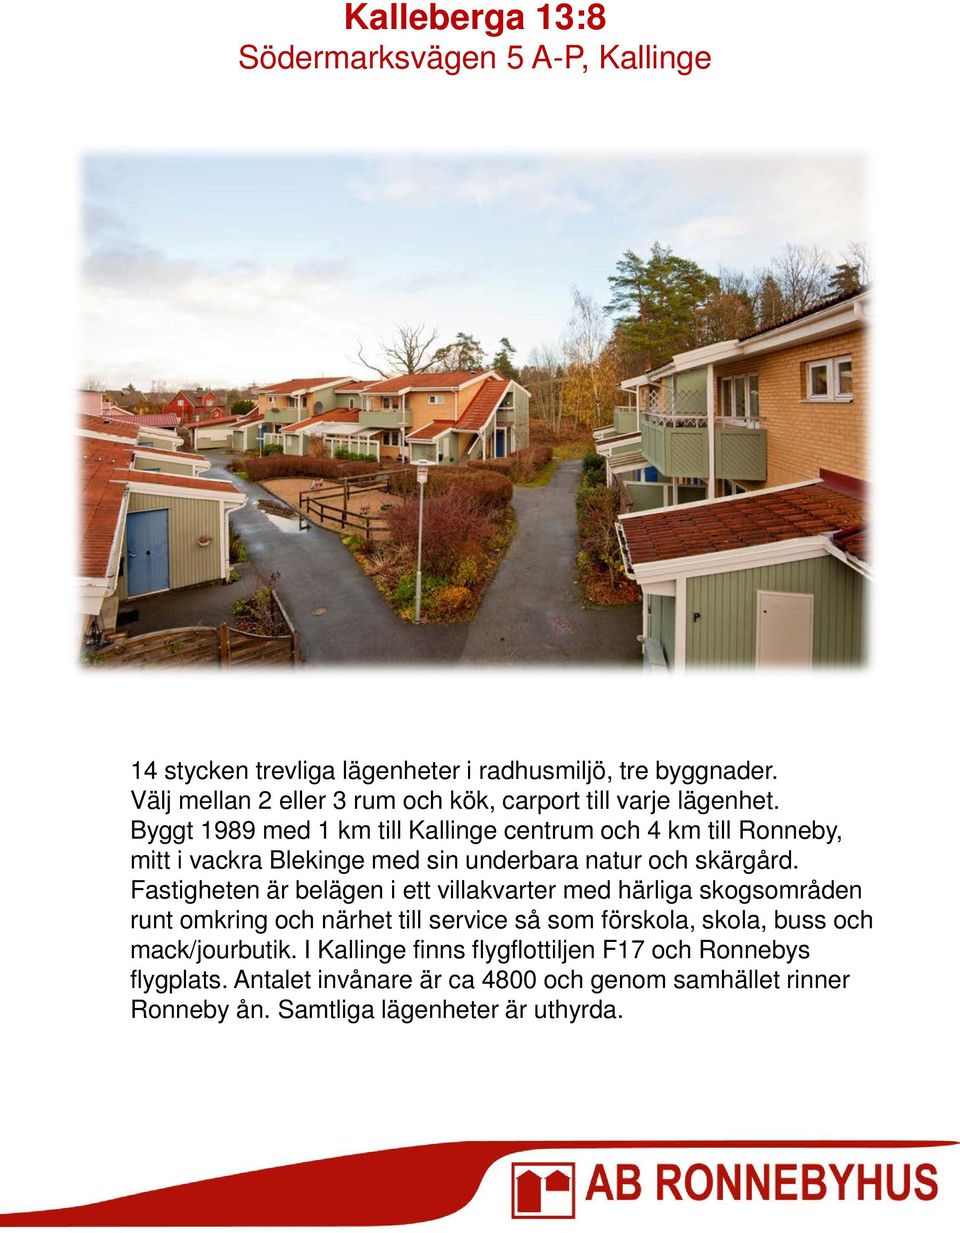 Byggt 1989 med 1 km till Kallinge centrum och 4 km till Ronneby, mitt i vackra Blekinge med sin underbara natur och skärgård.